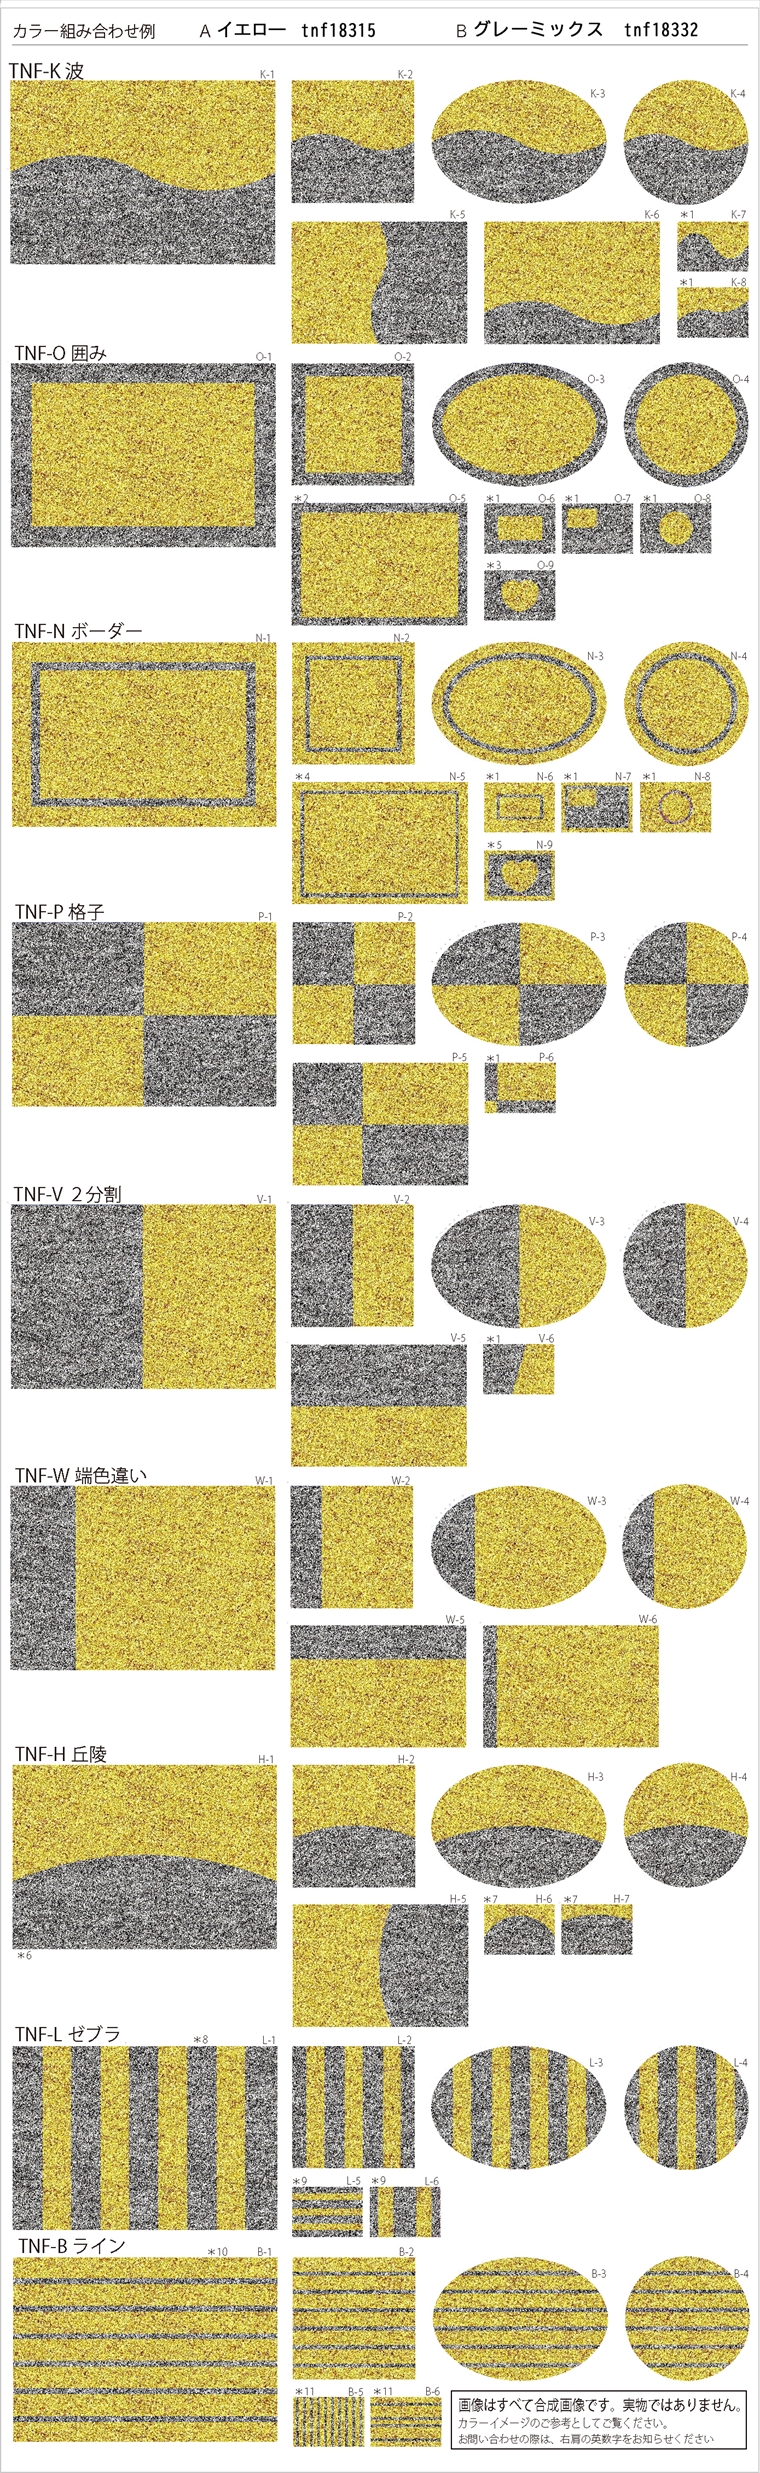 「ベーシックアクリルパターン柄」のカラー組み合わせ例